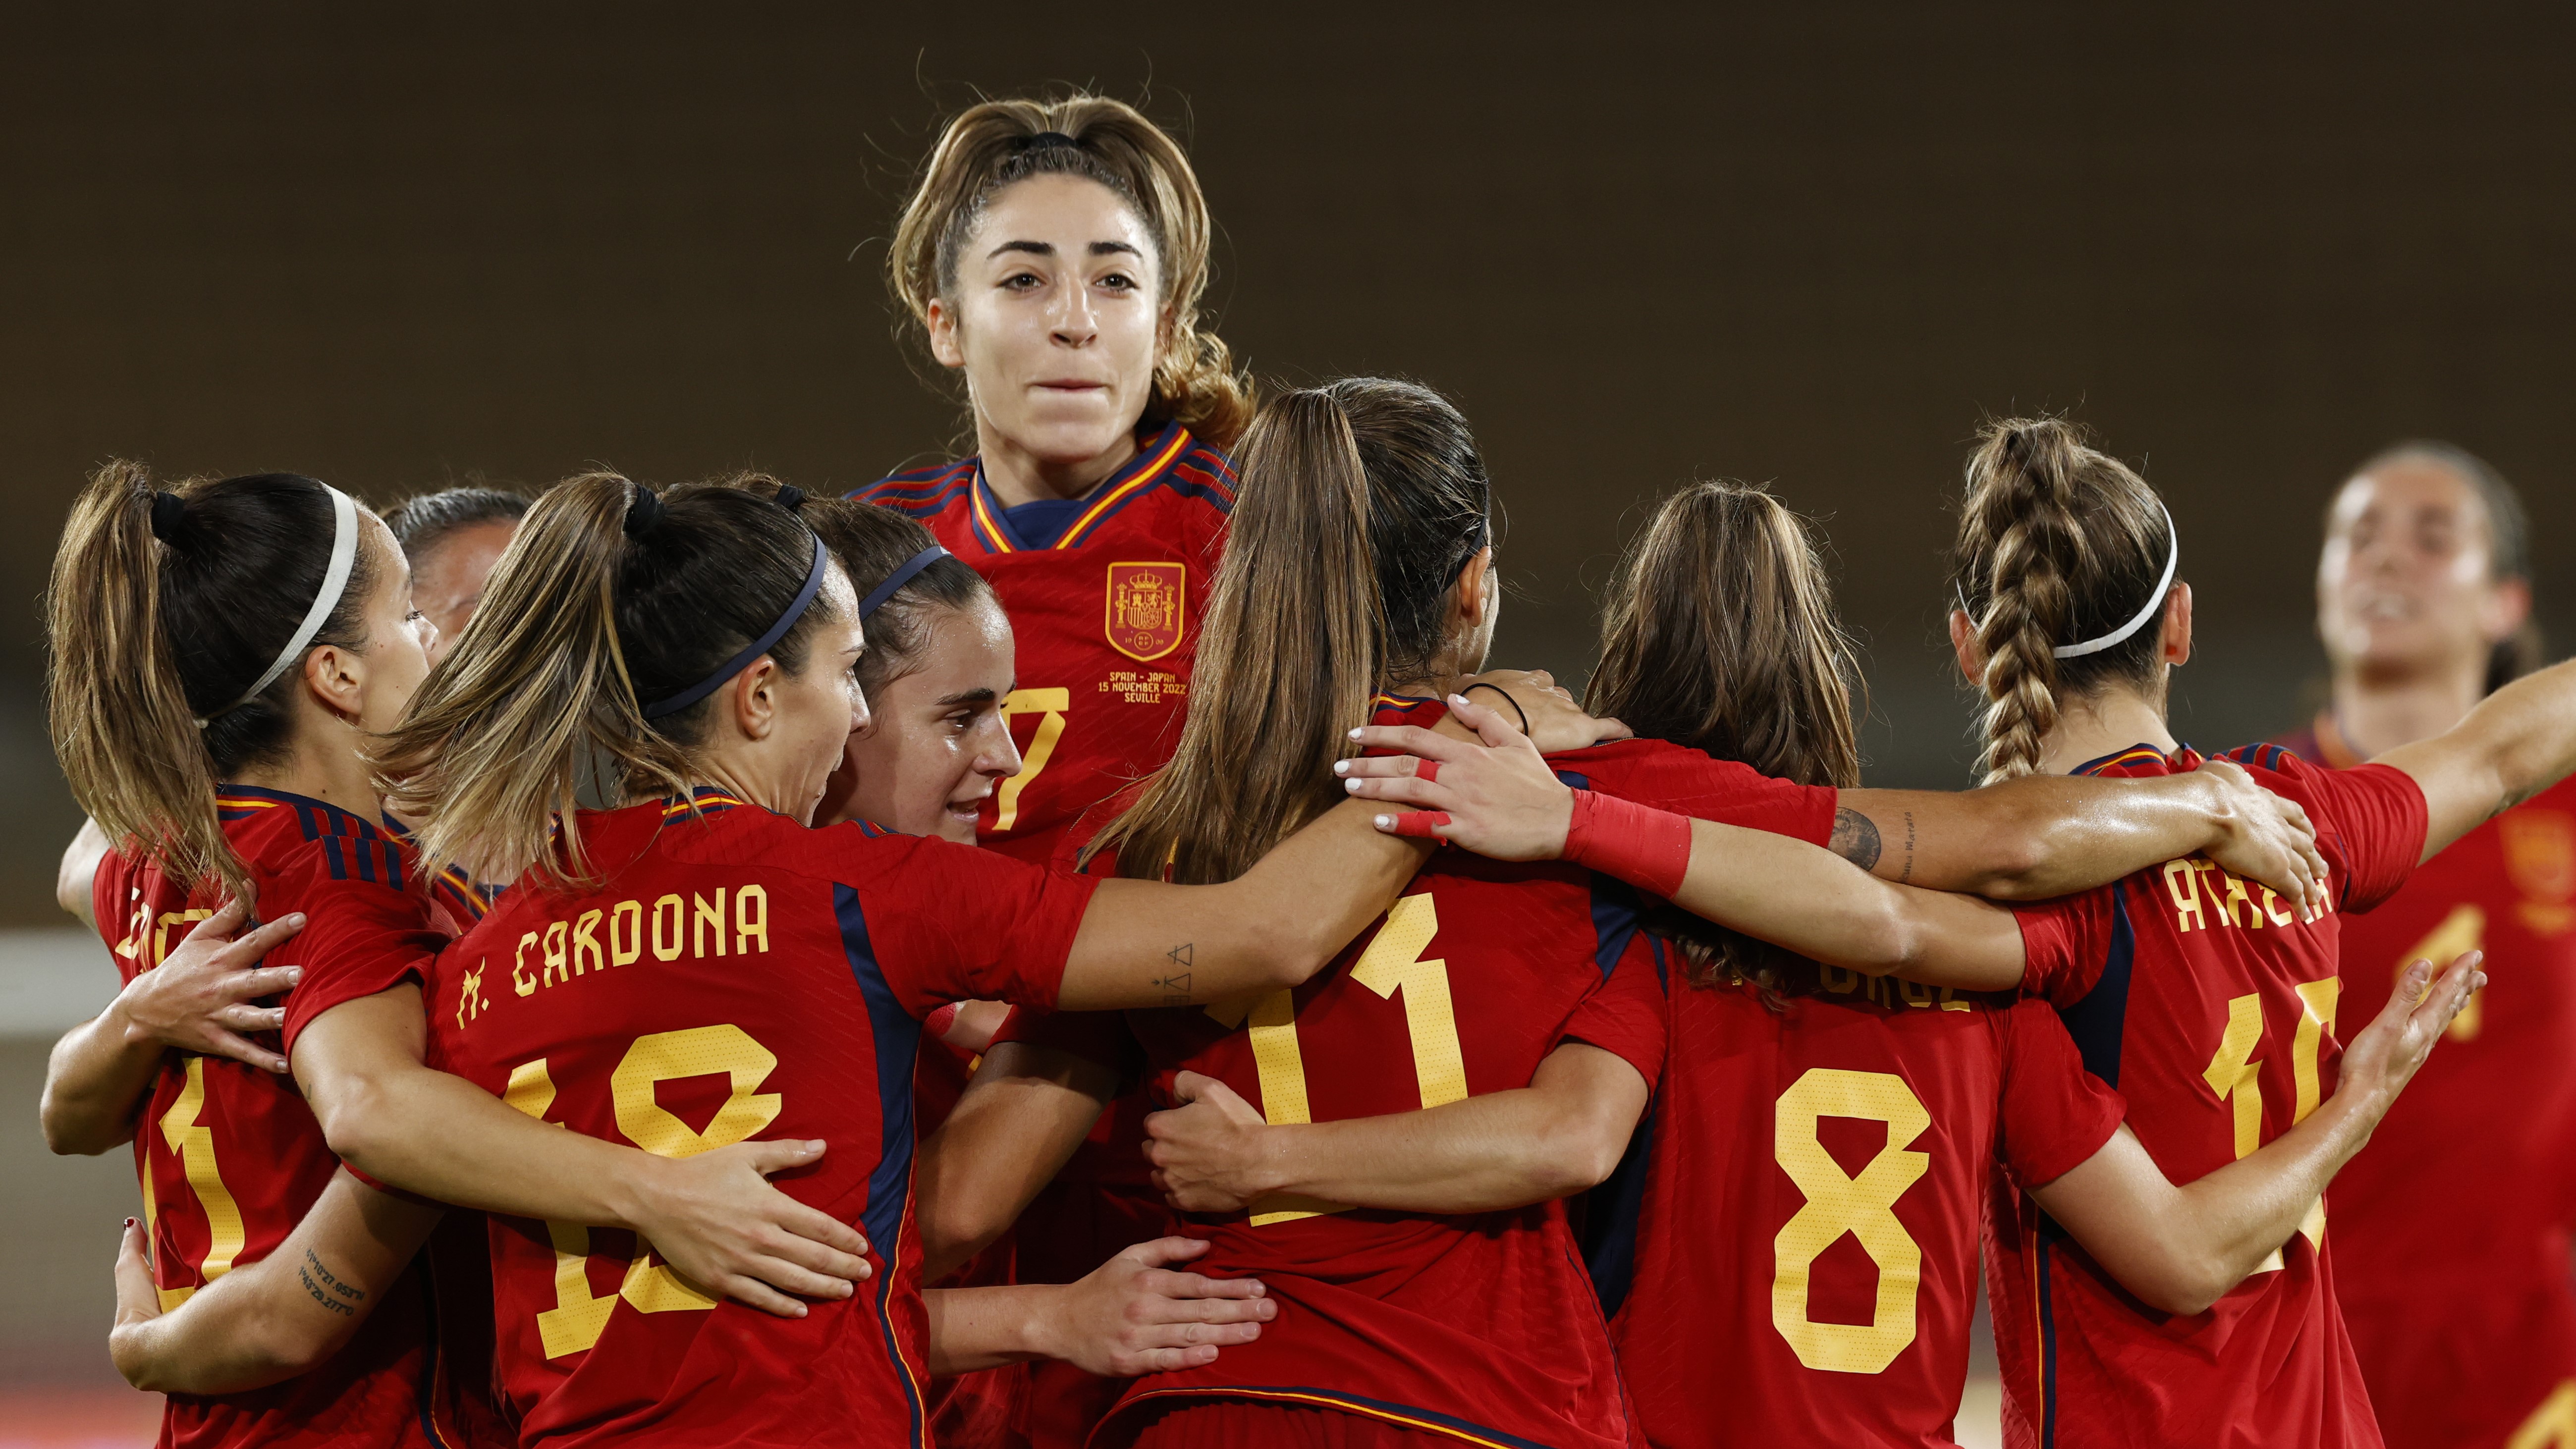 Intacto gasolina Enredo Selección Española Femenina de Fútbol- RTVE.es